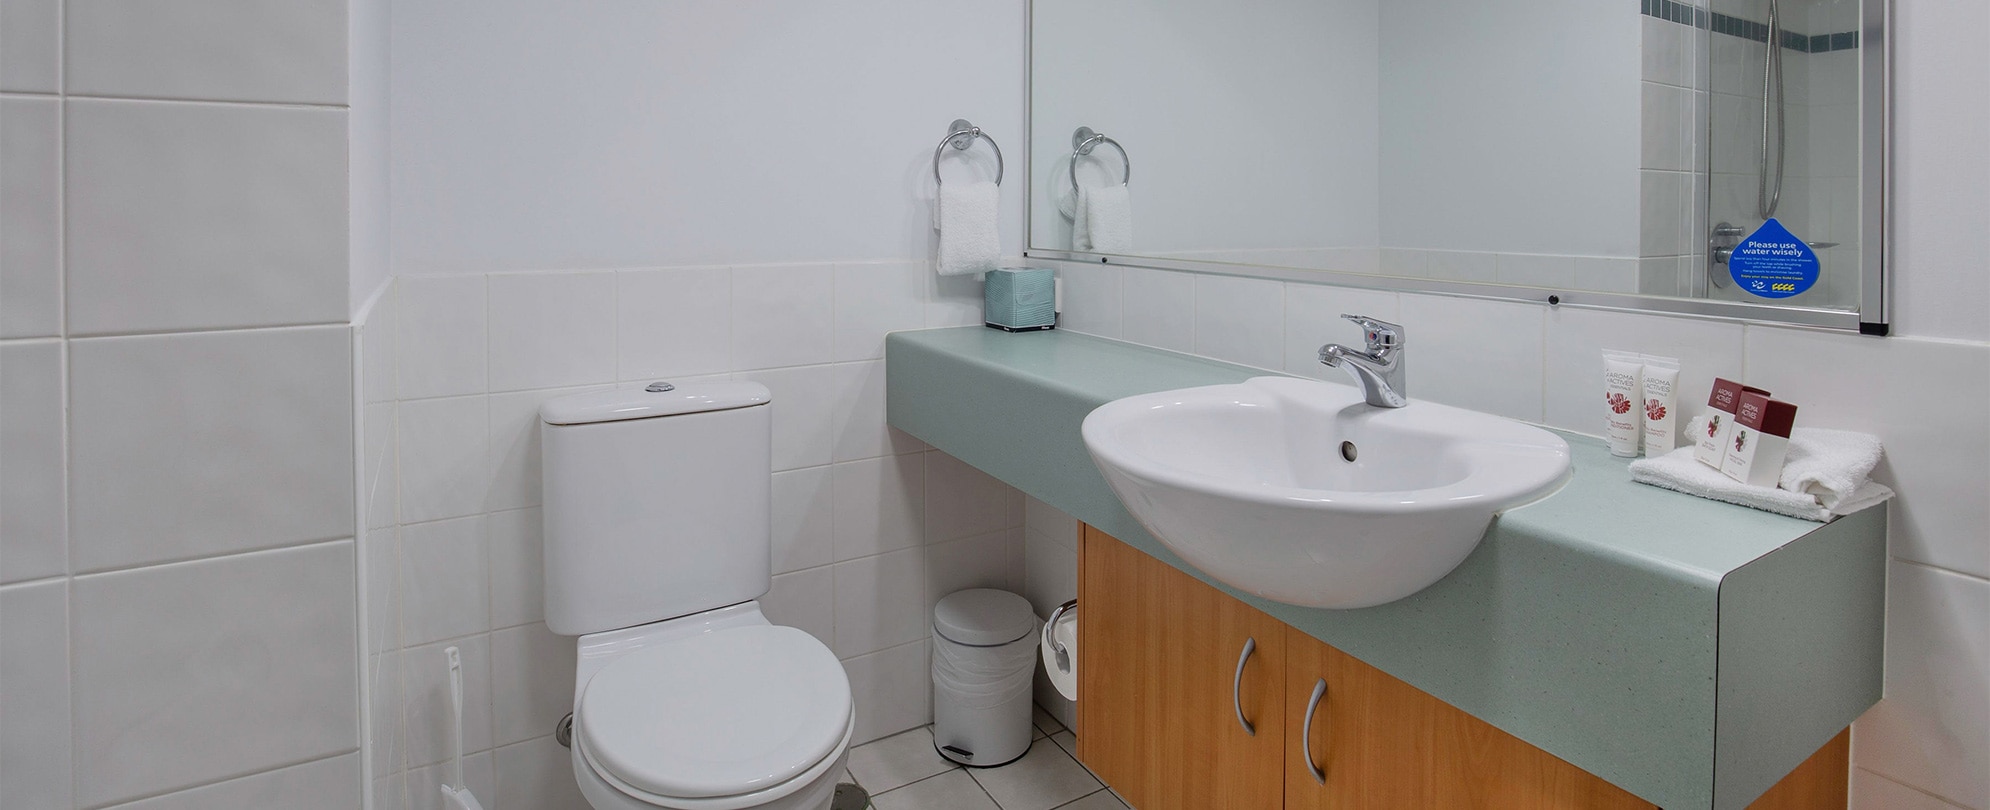 The toilet and vanity sink in the bathroom of a Club Wyndham Kirra Beach standard suite.